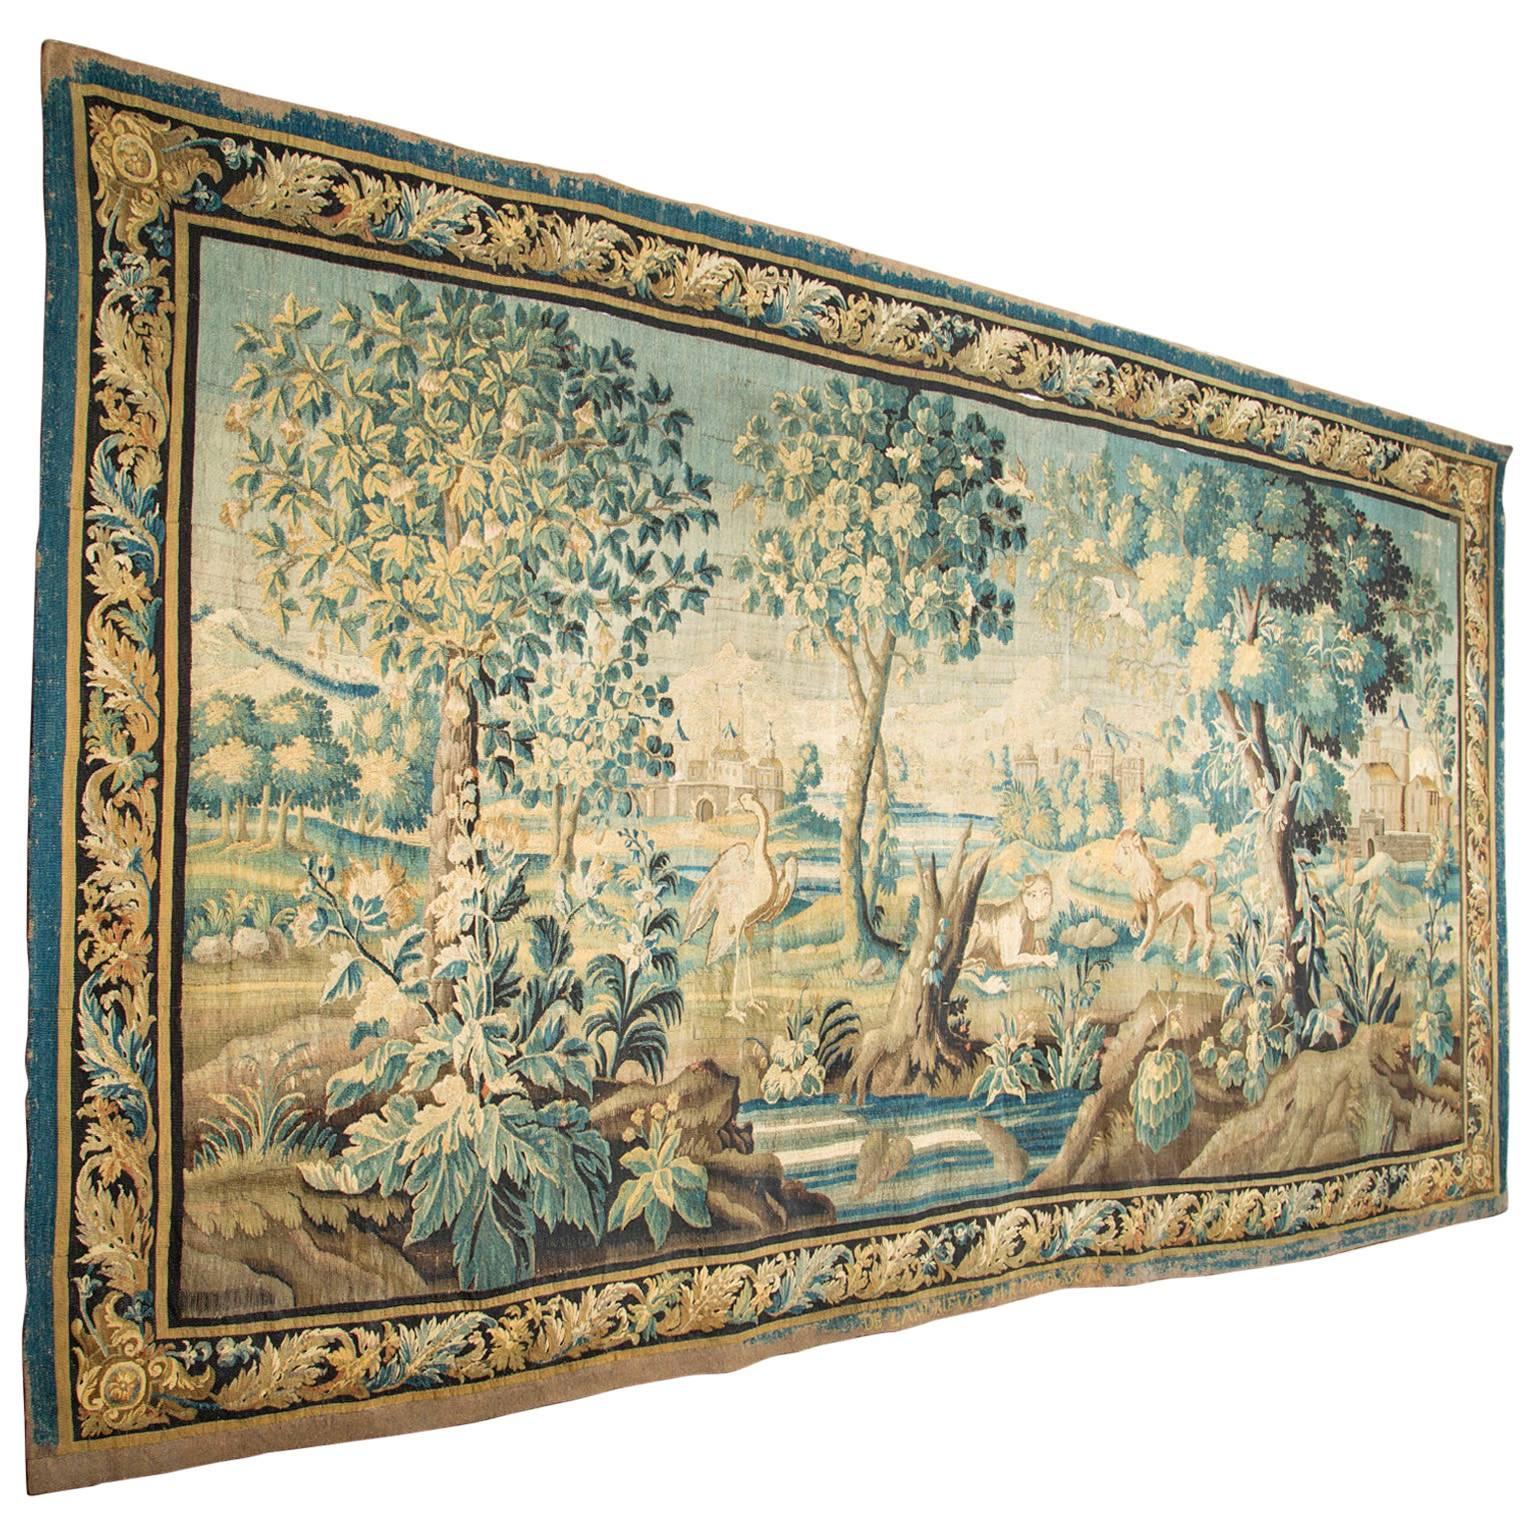 18th Century Aubusson Tapestry signed “De Landrieve” & M R D”Aubusson”